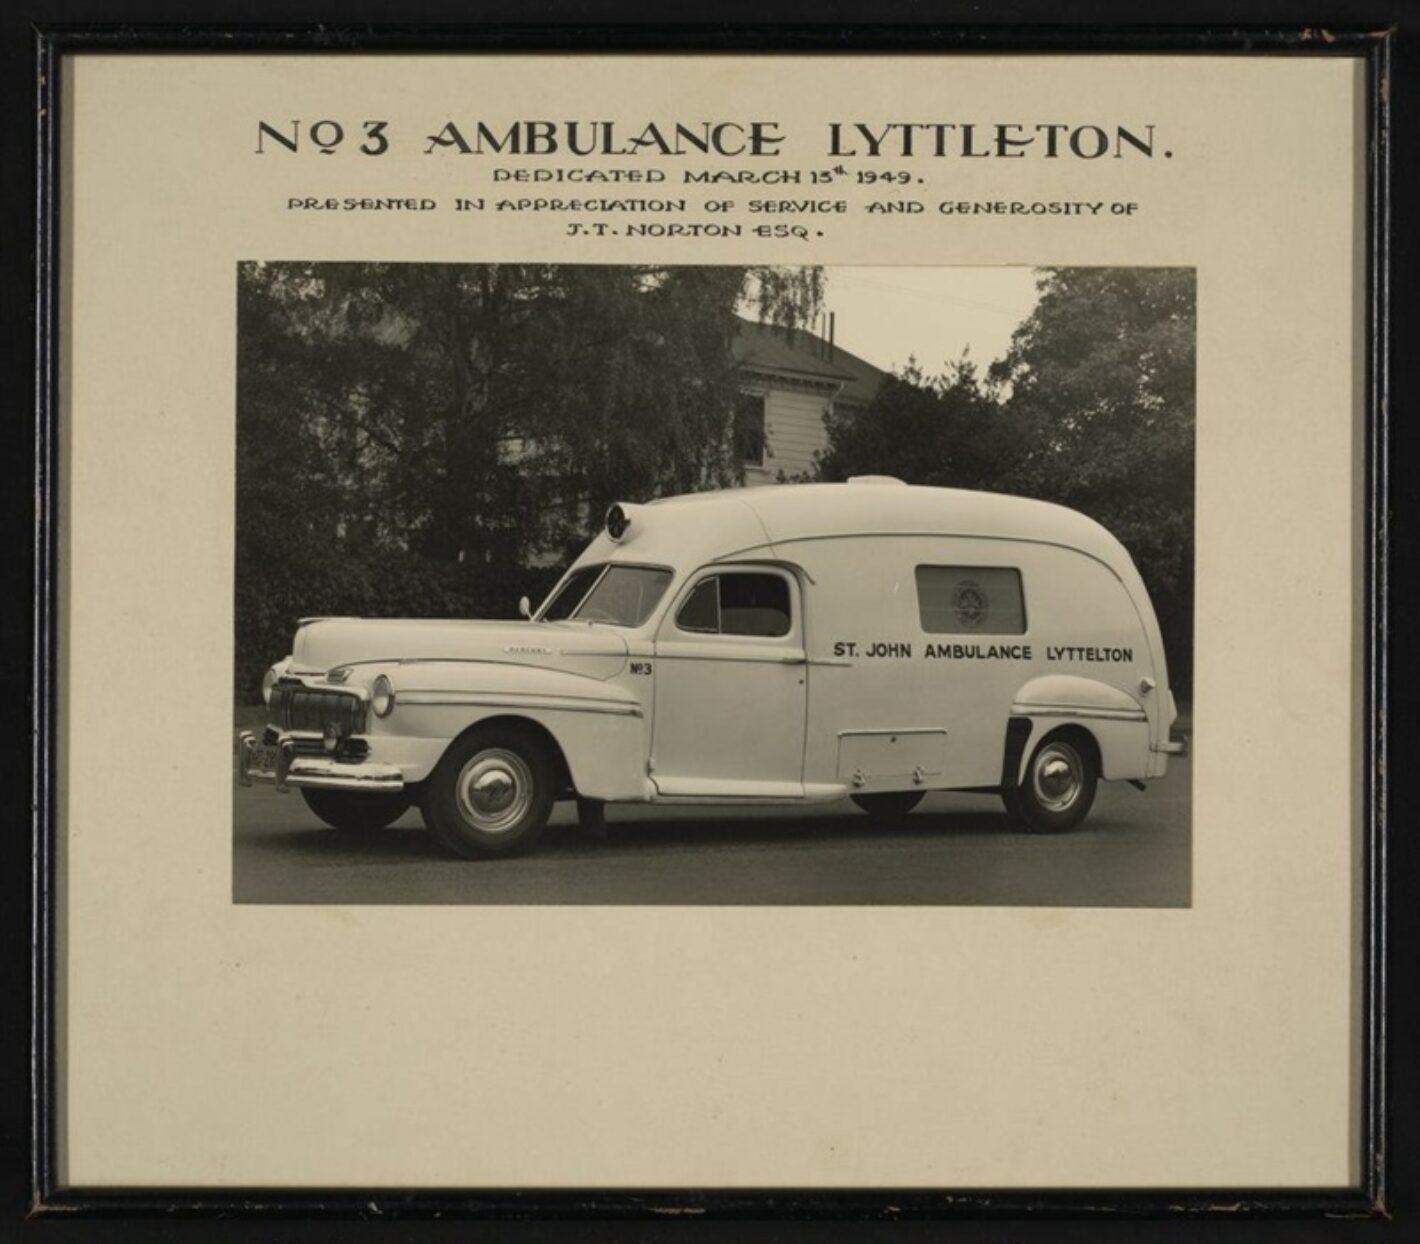 Number 3 ambulance lyttelton